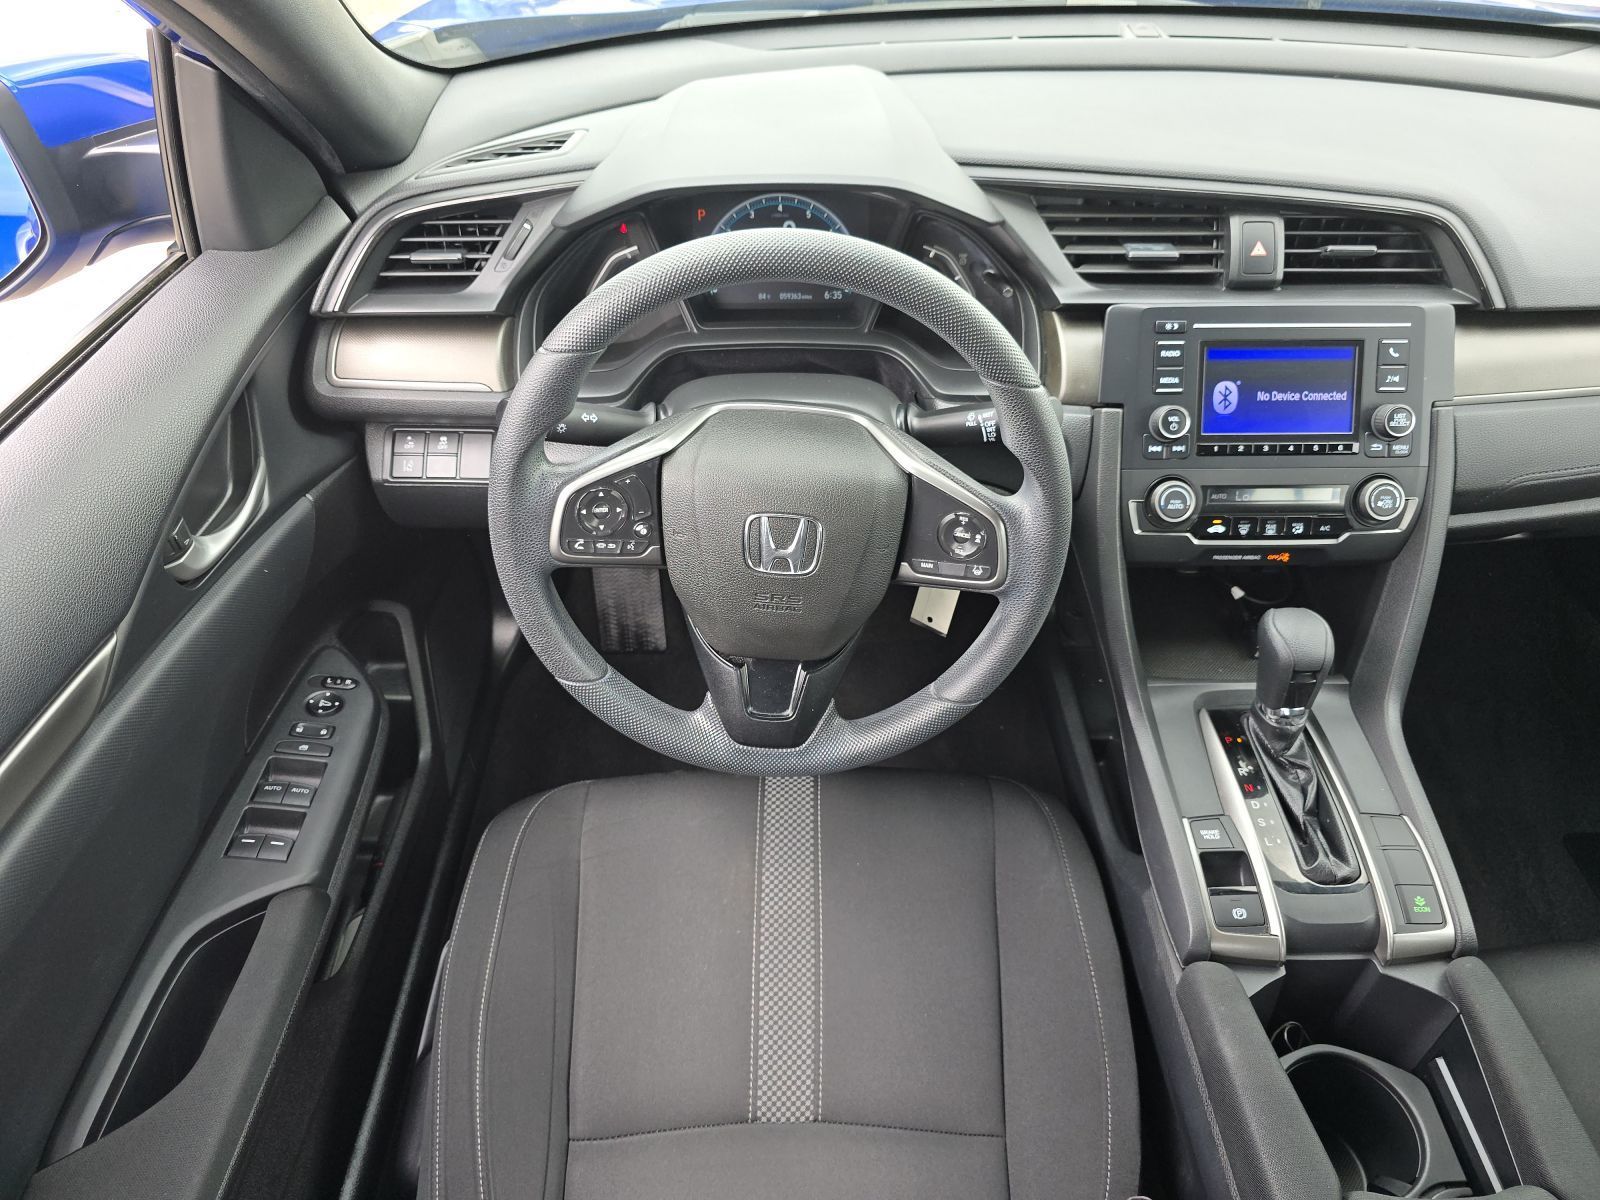 Used, 2020 Honda Civic LX CVT, Blue, G0730A-21